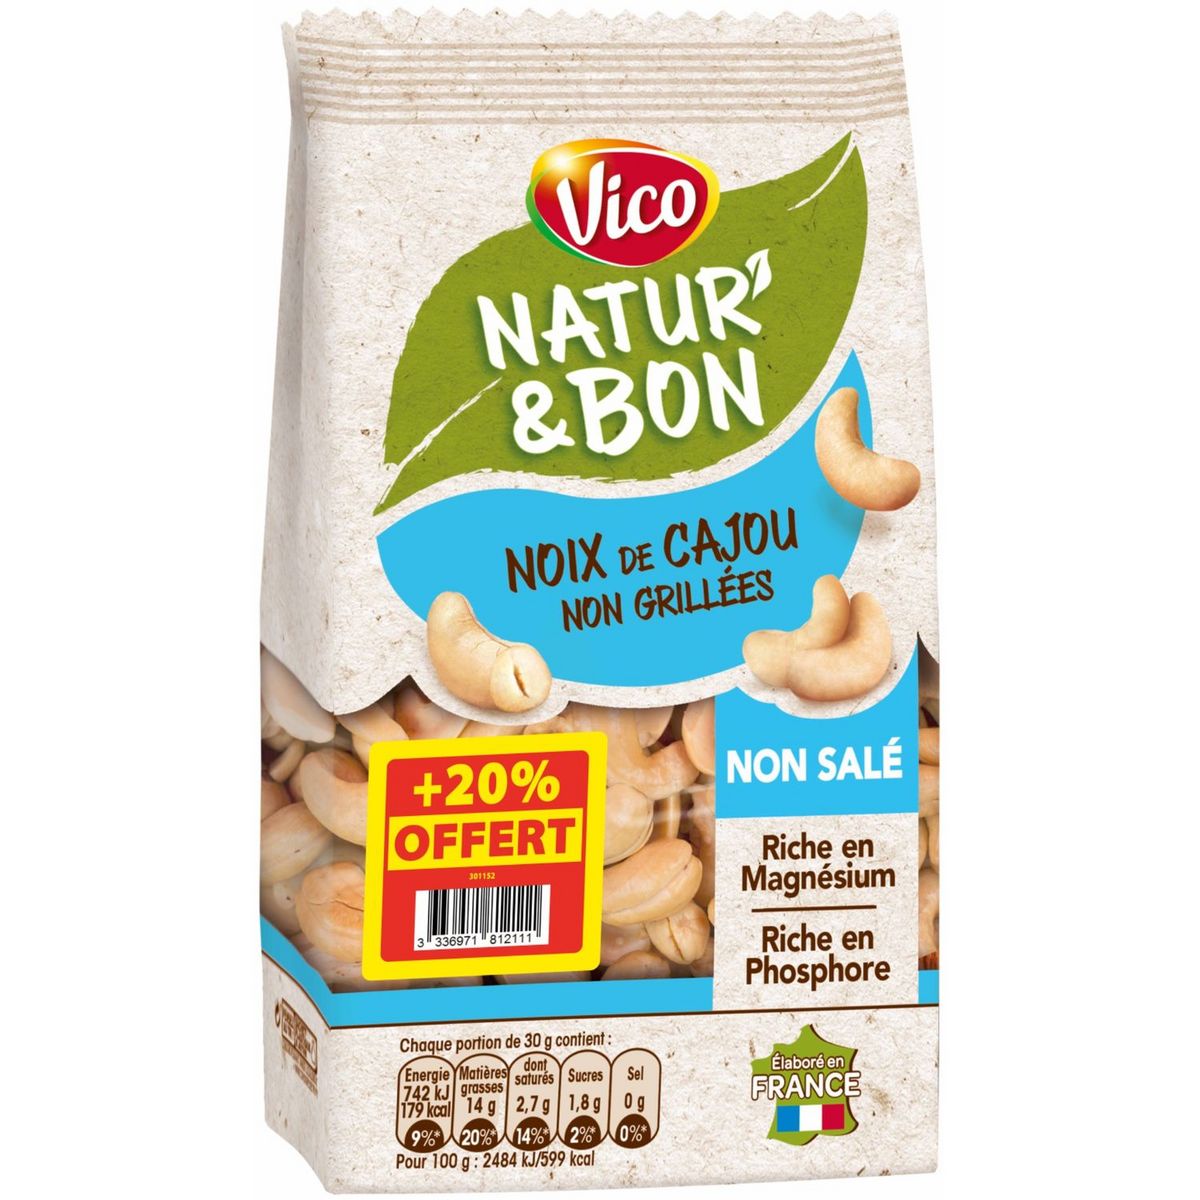 VICO Natur'& bon noix de cajou non grillées non salé 200g+ 20% offert pas  cher 